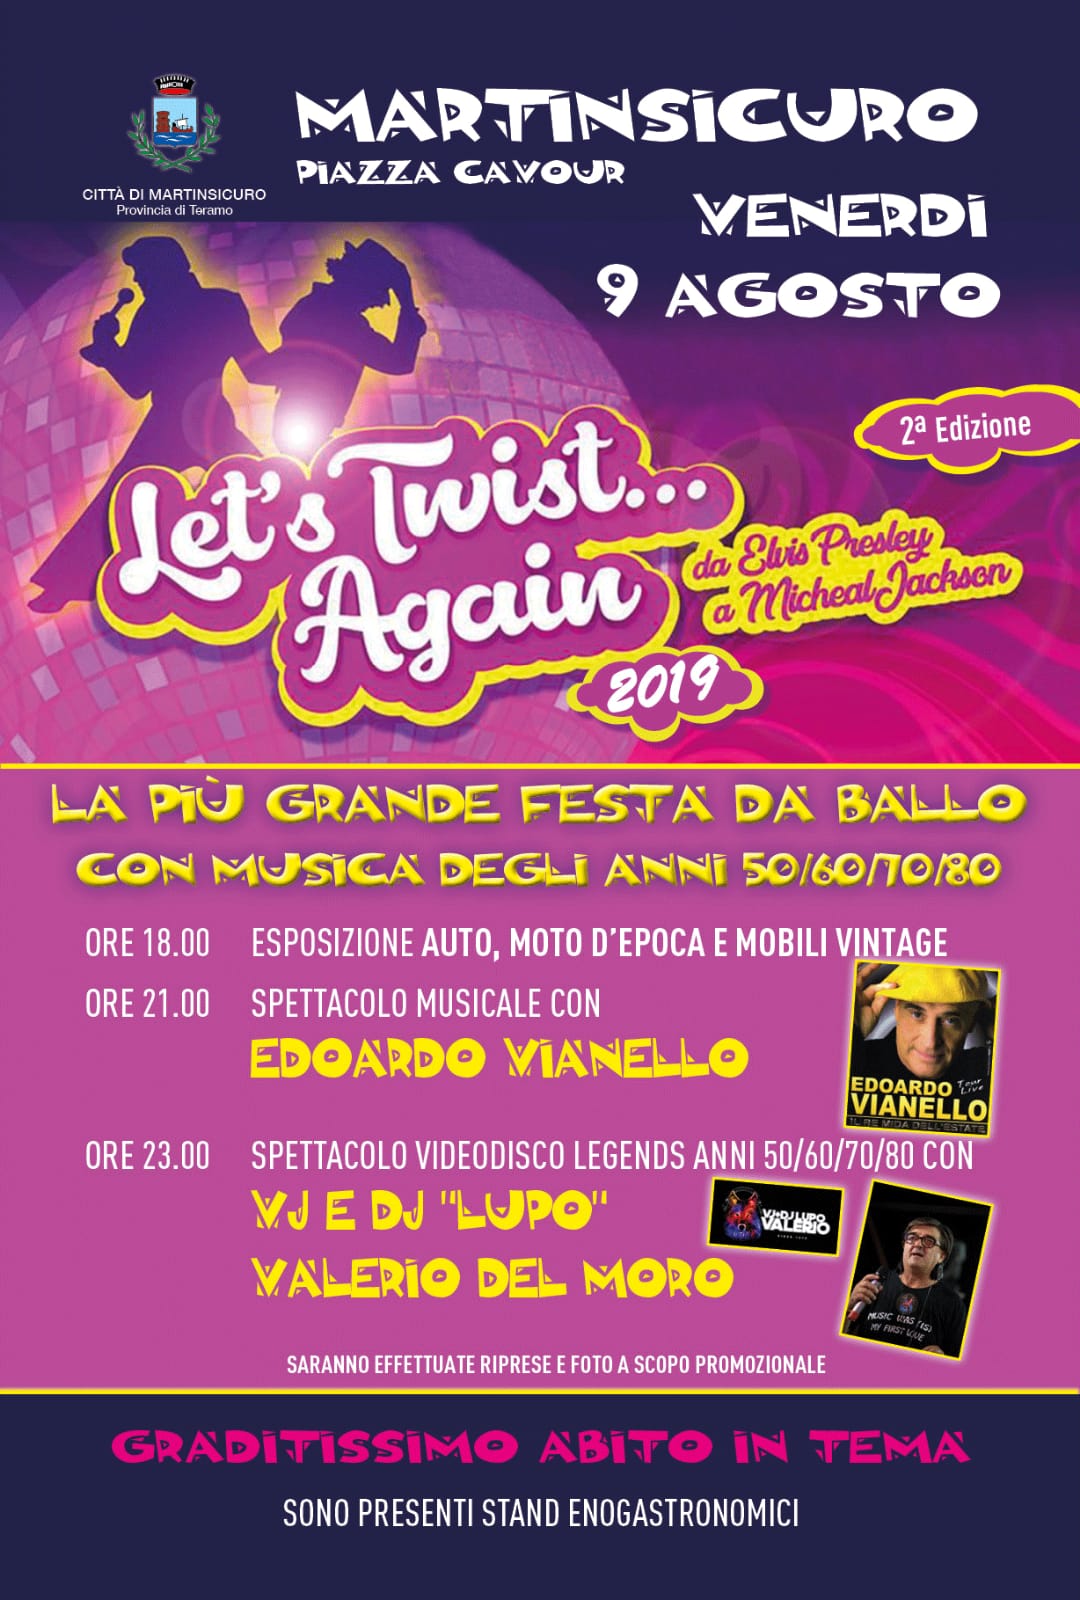 “Let’s Twist Again”, a Martinsicuro la più grande festa da ballo